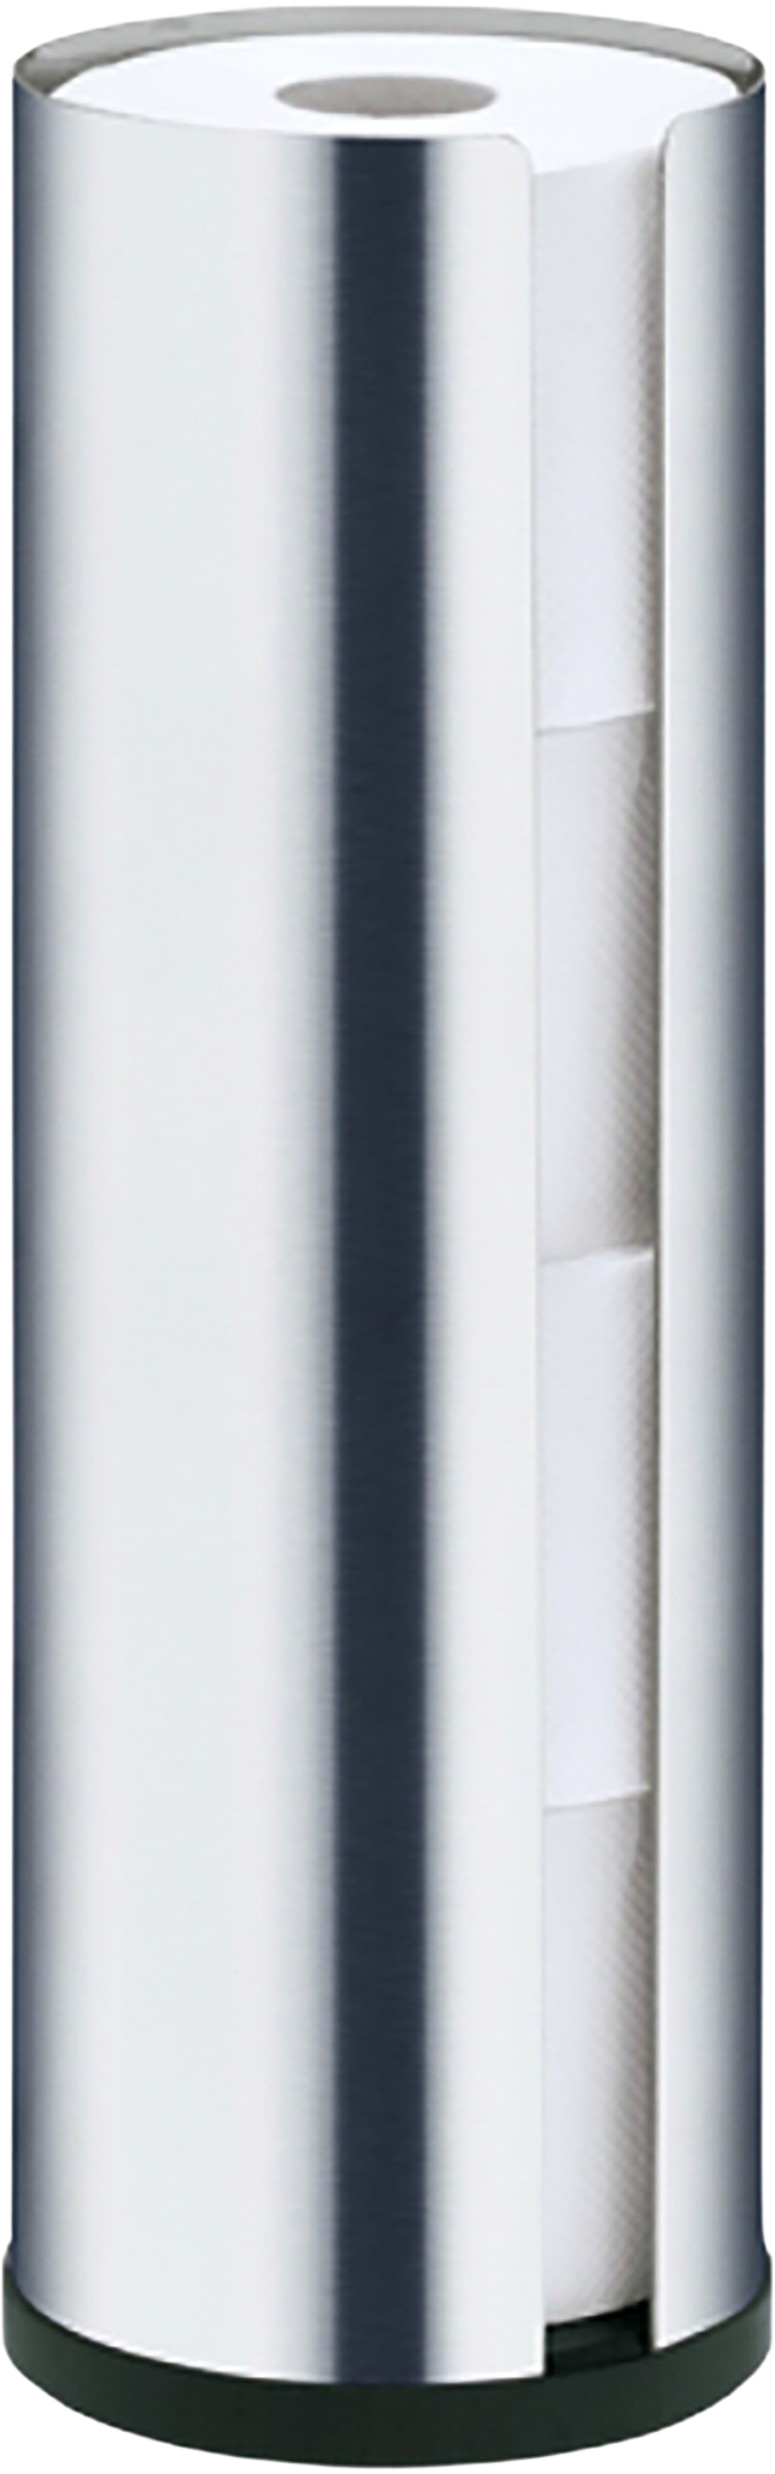 WC-Rollenhalter NEXIO 4RO in edelstahl matt präsentiert im Onlineshop von KAQTU Design AG. Badzubehör ist von e + h Services AG